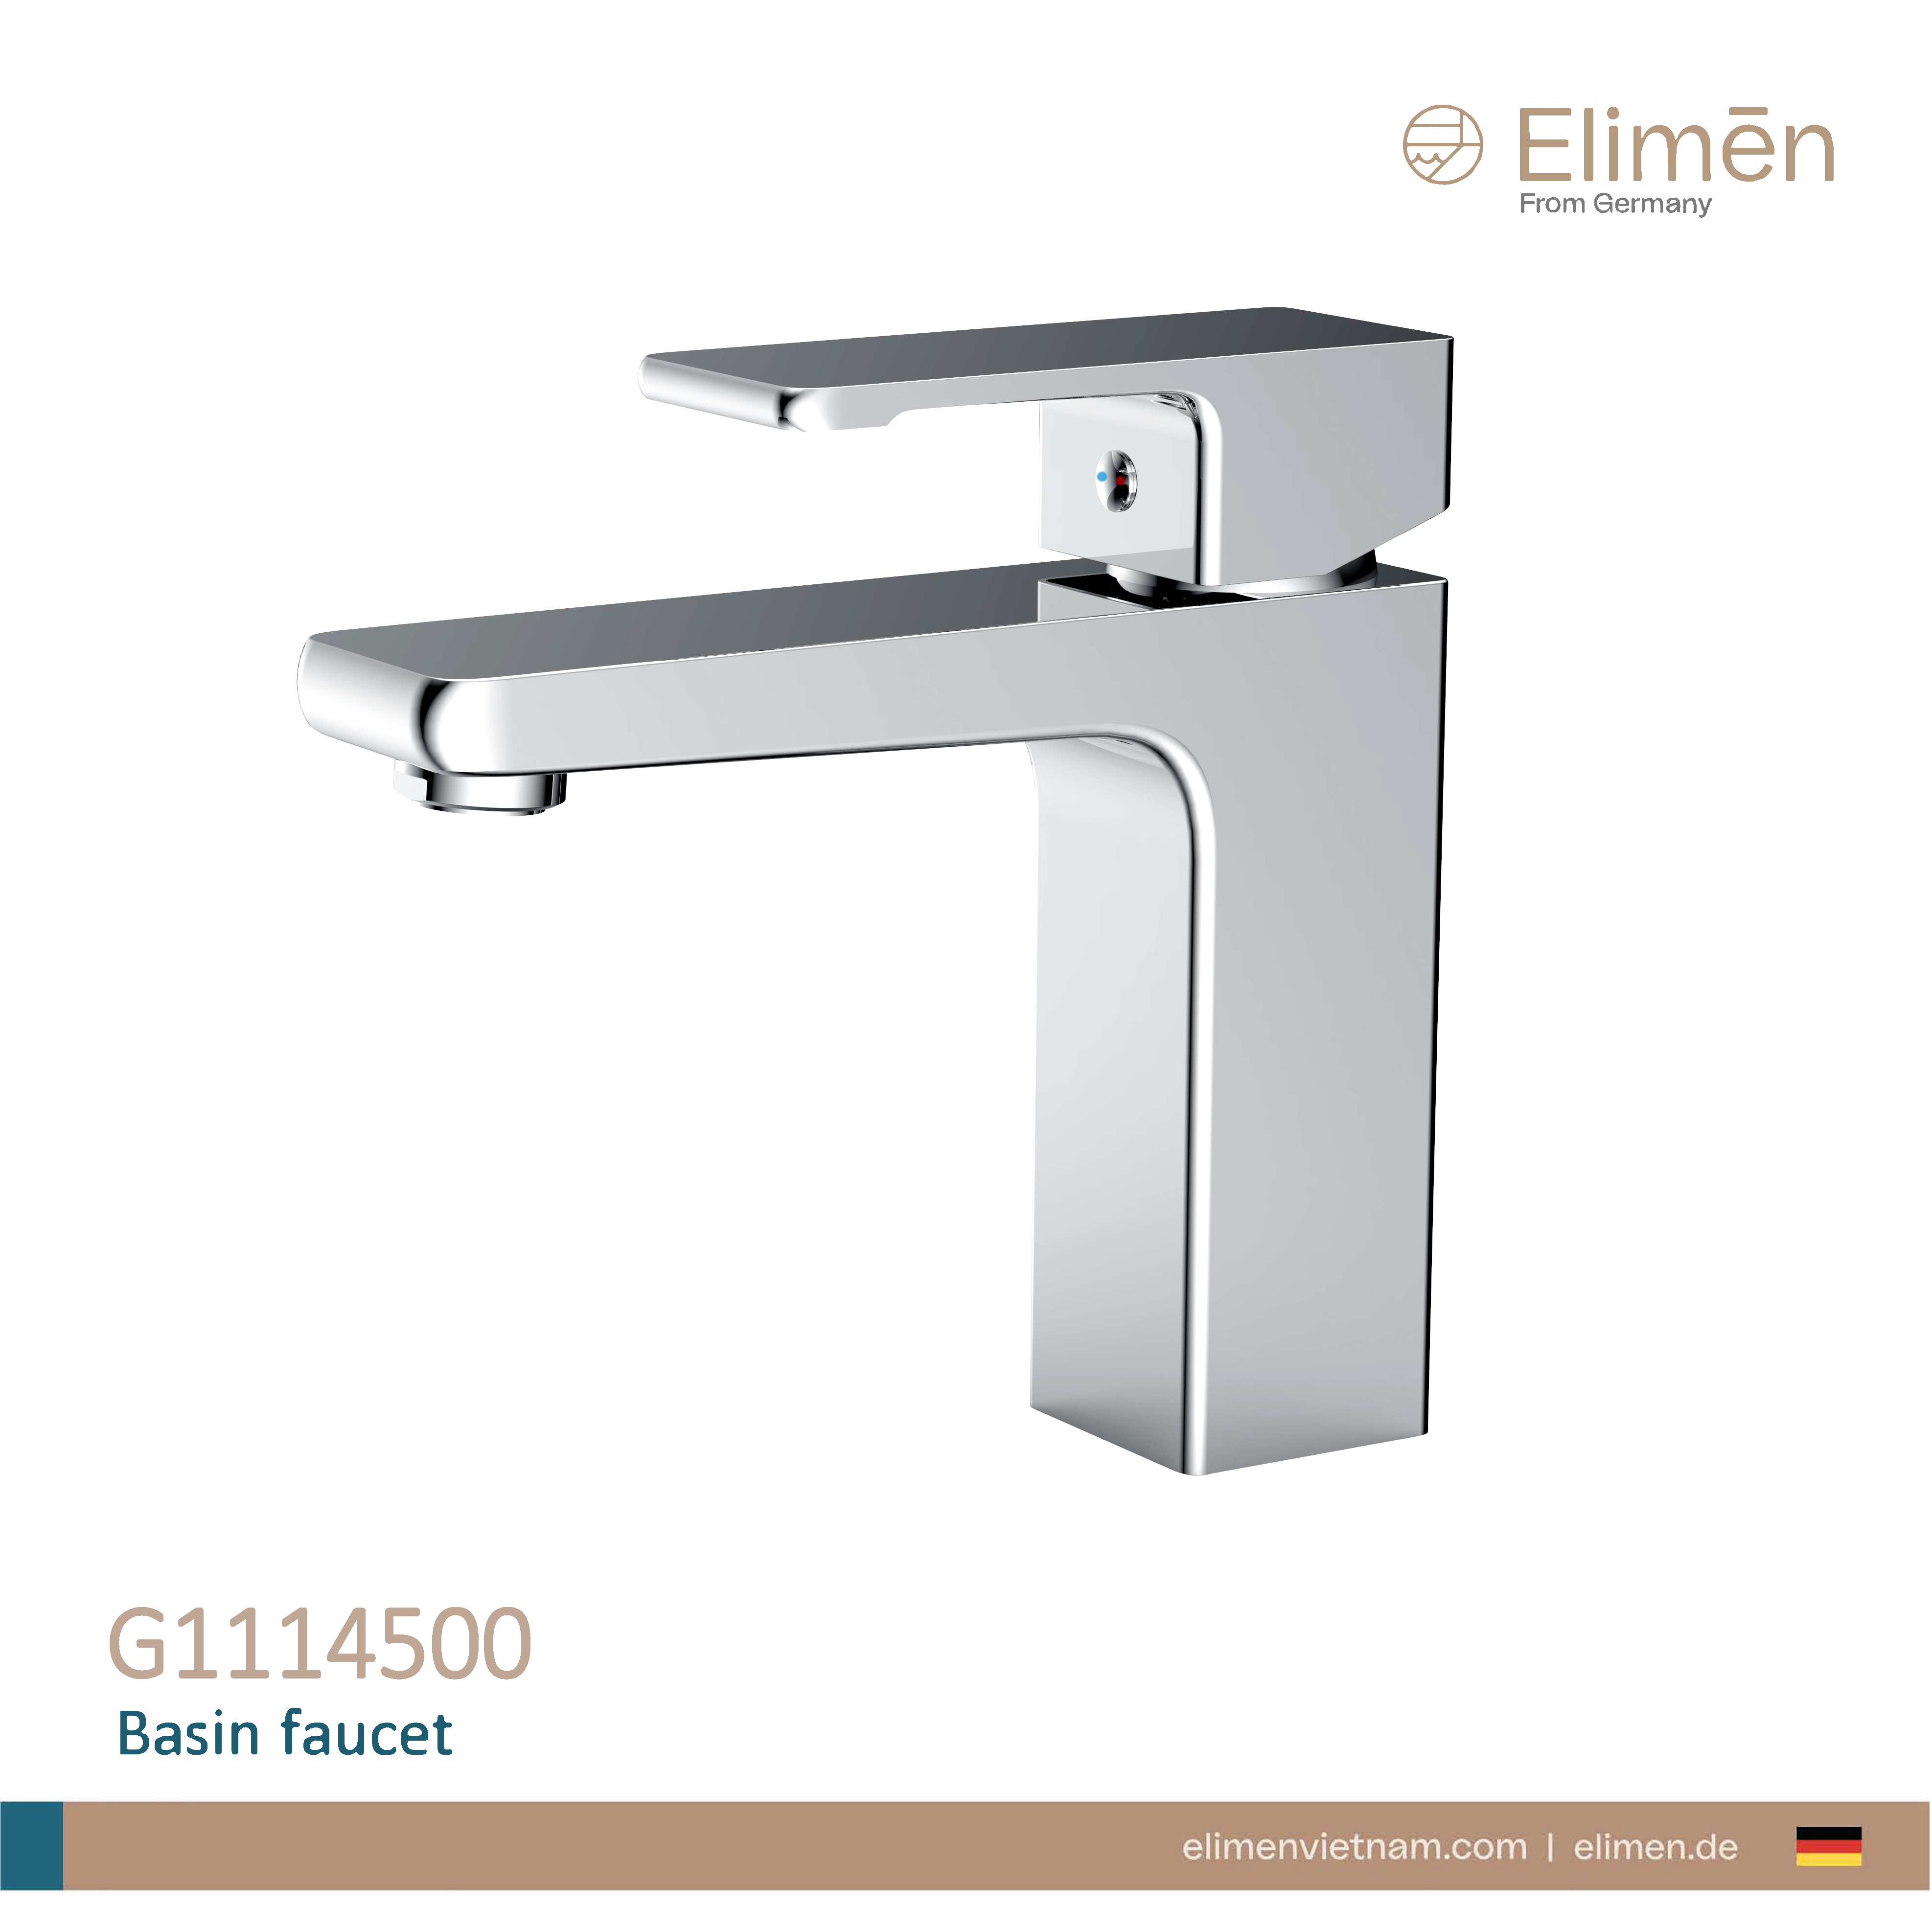 Elimen basin faucet - Code G1114500